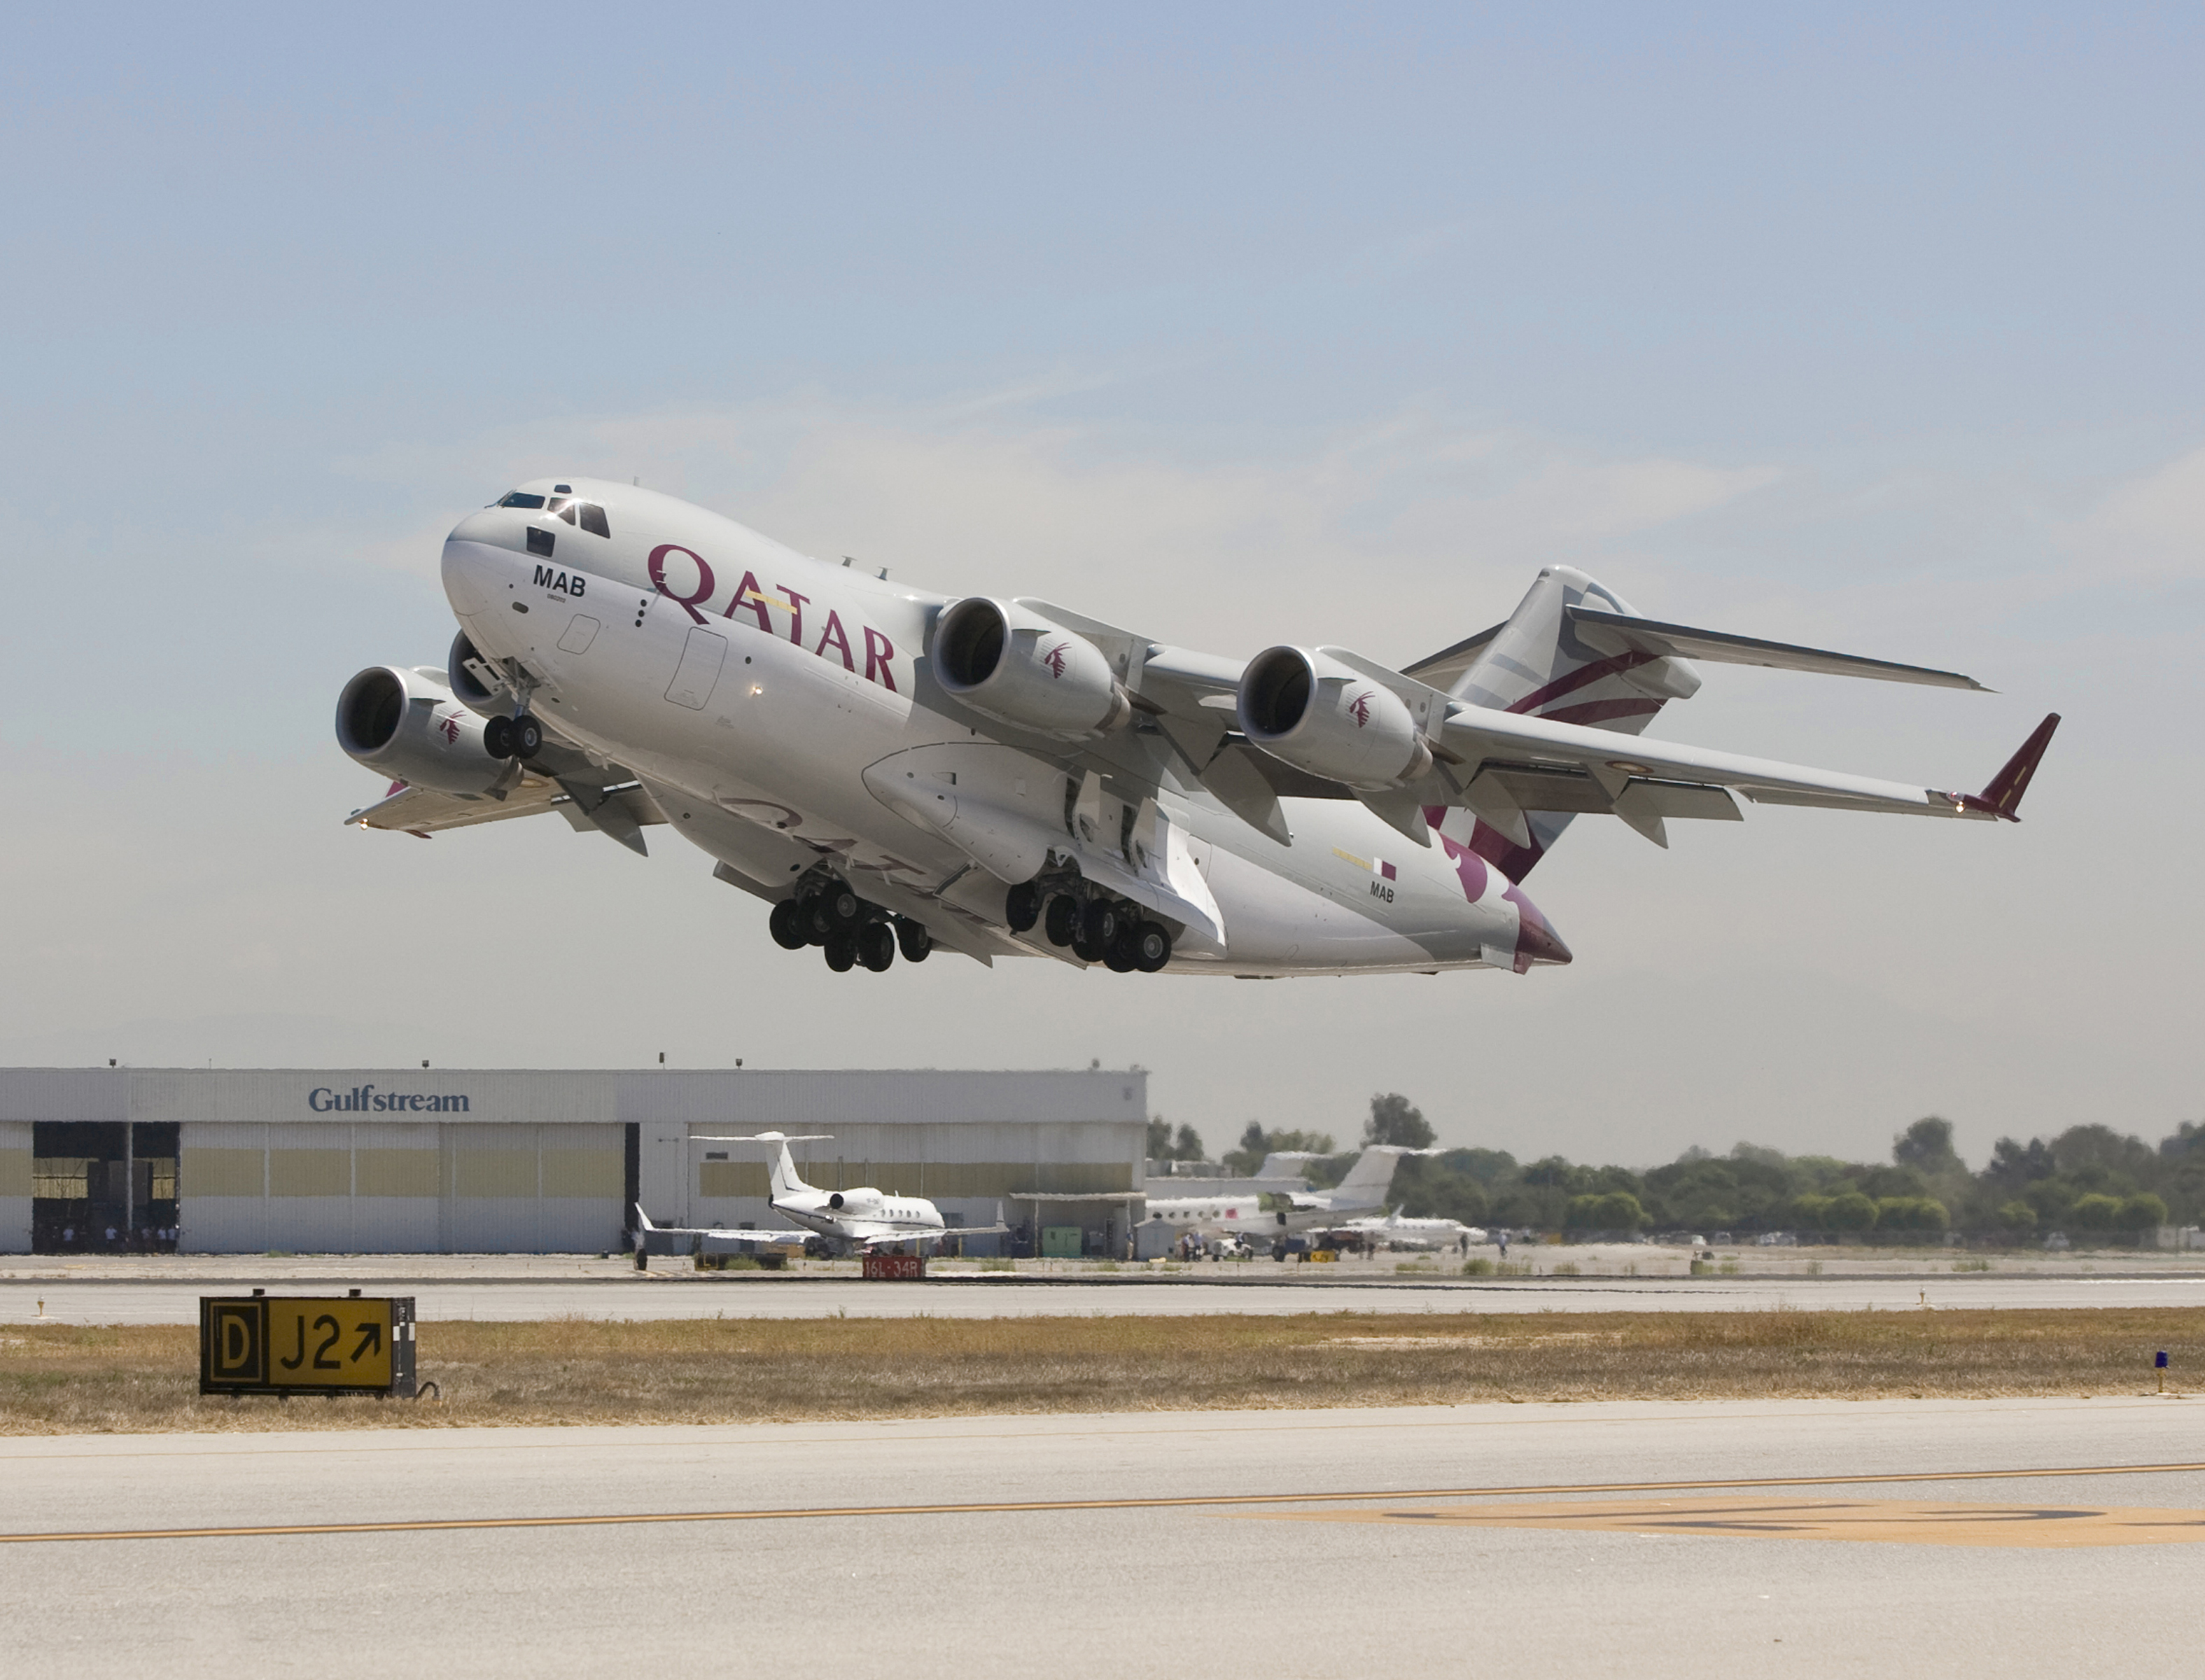 A legrondább változat: a Qatar Airways színeiben <br>(fotó: boeing.com)